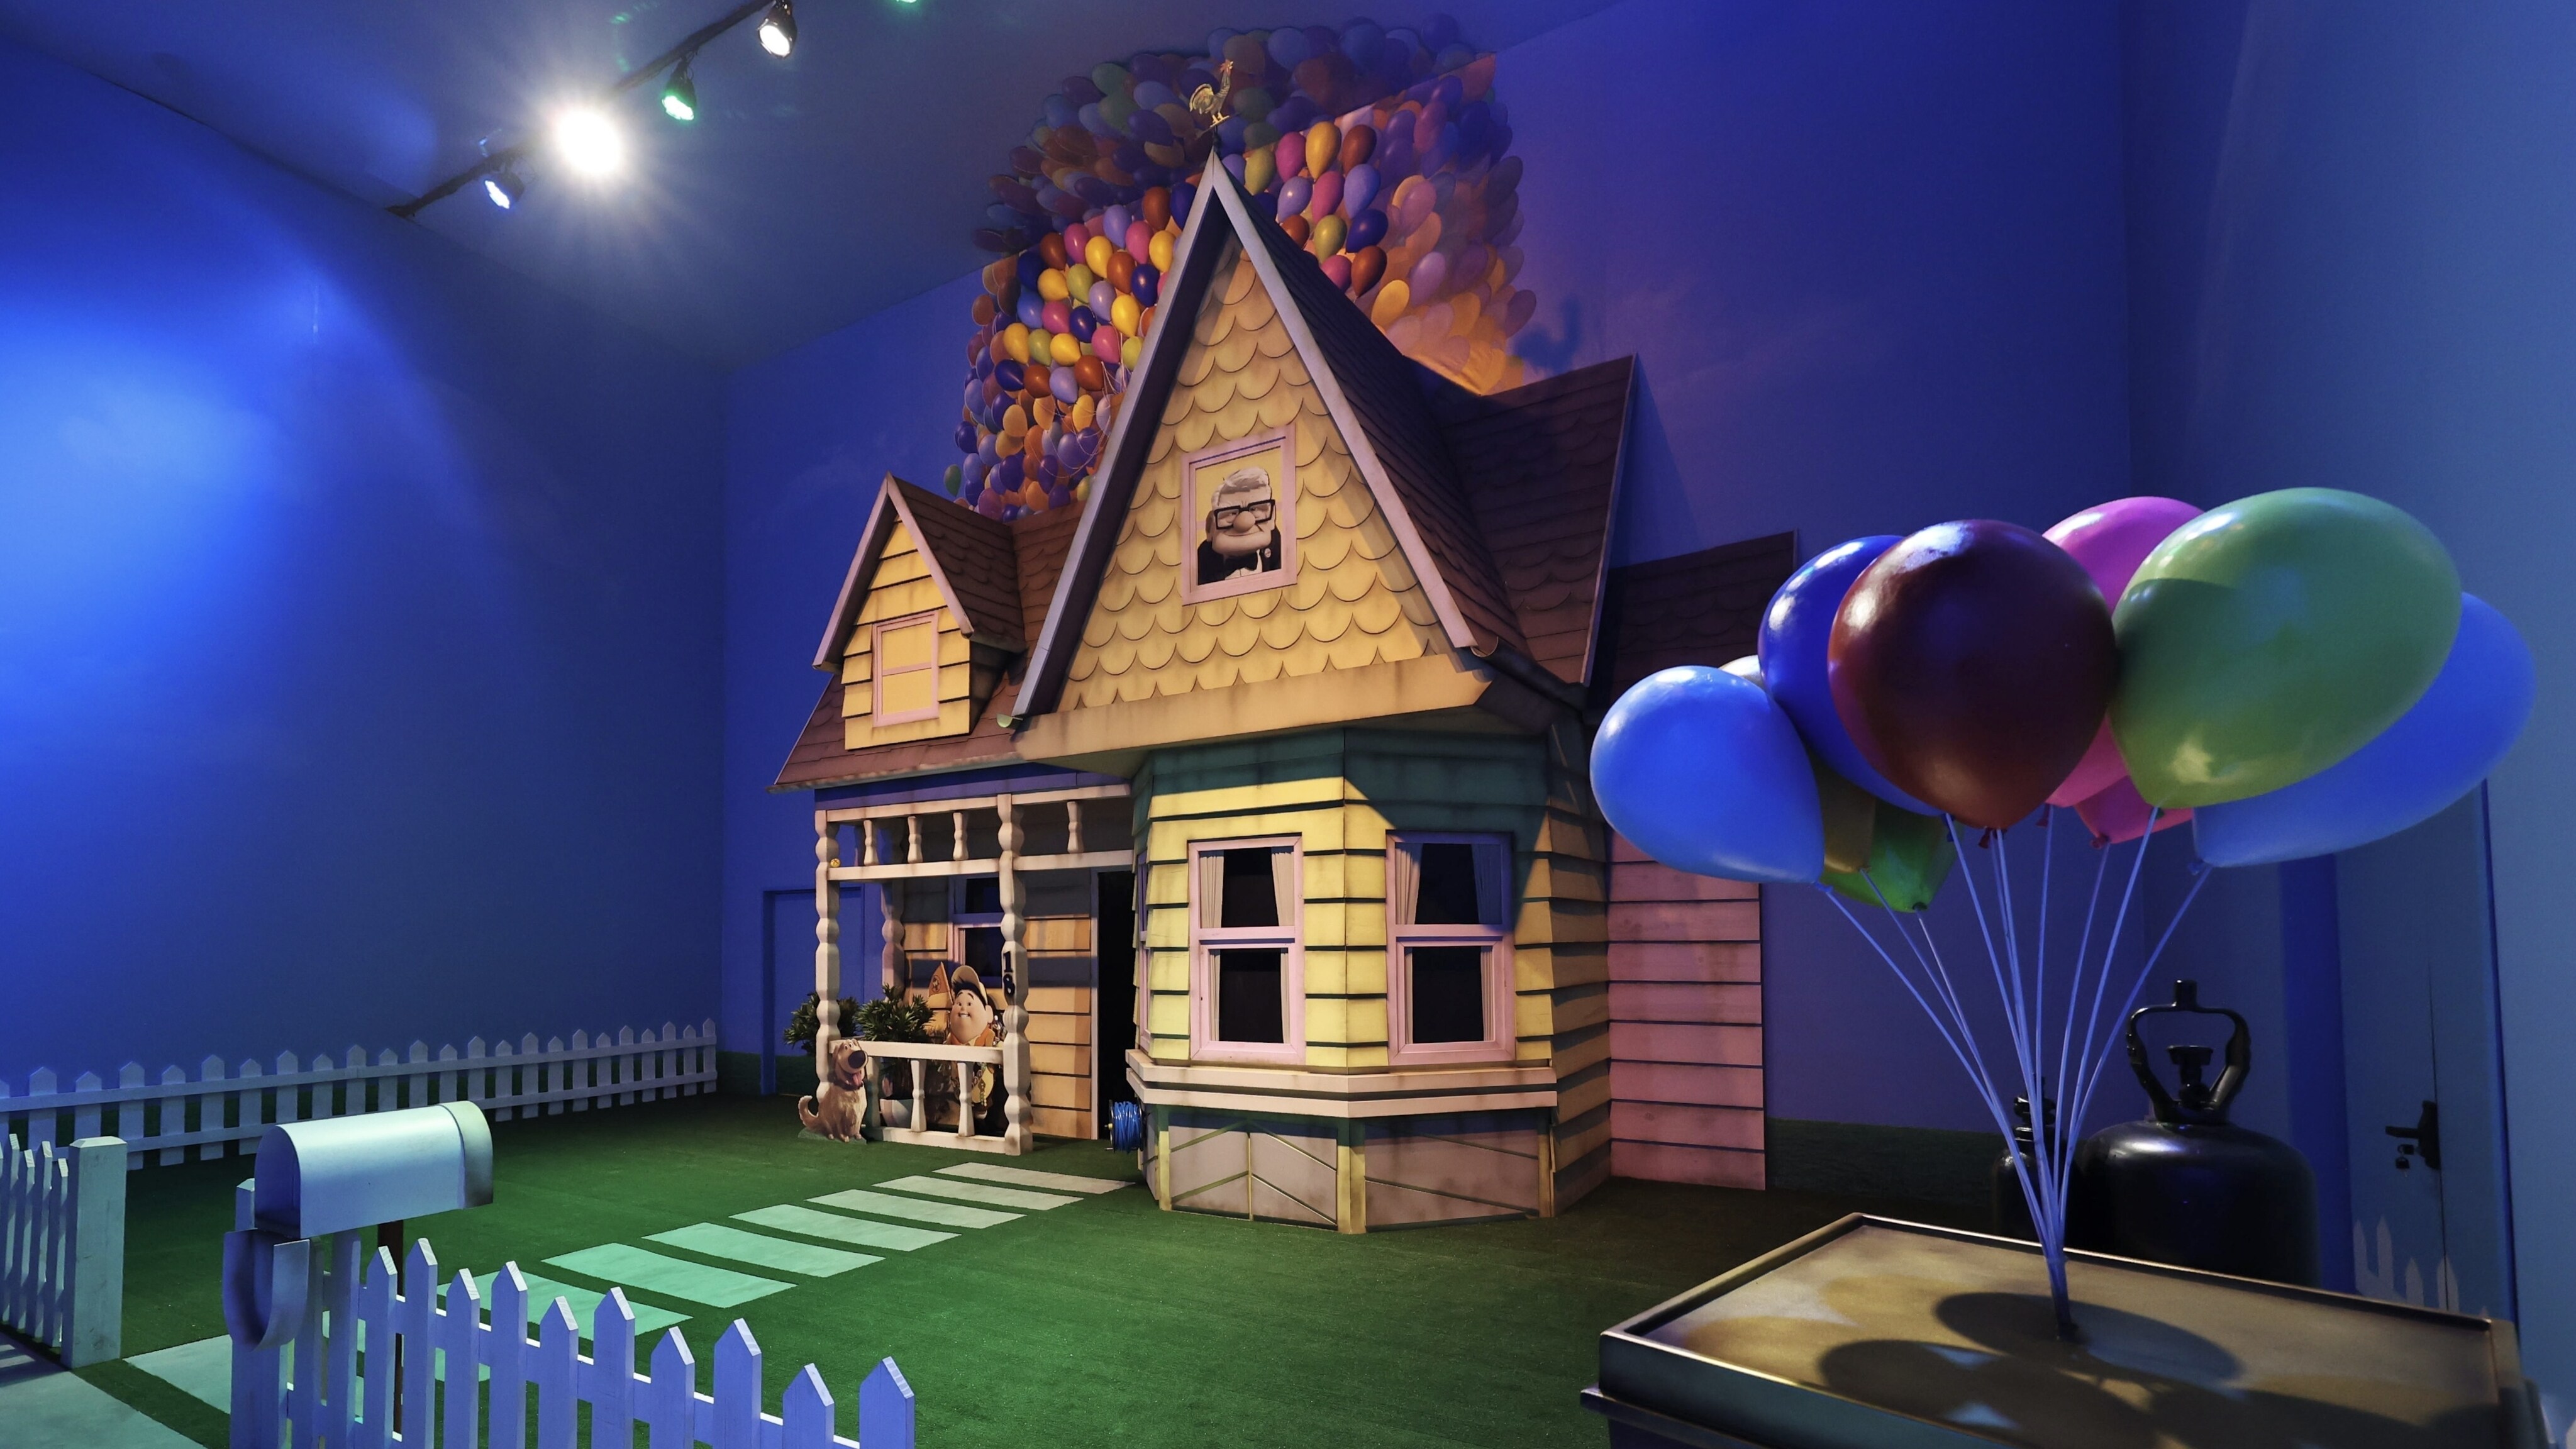 Mundo Pixar: quais os filmes que você encontra na exposição? 